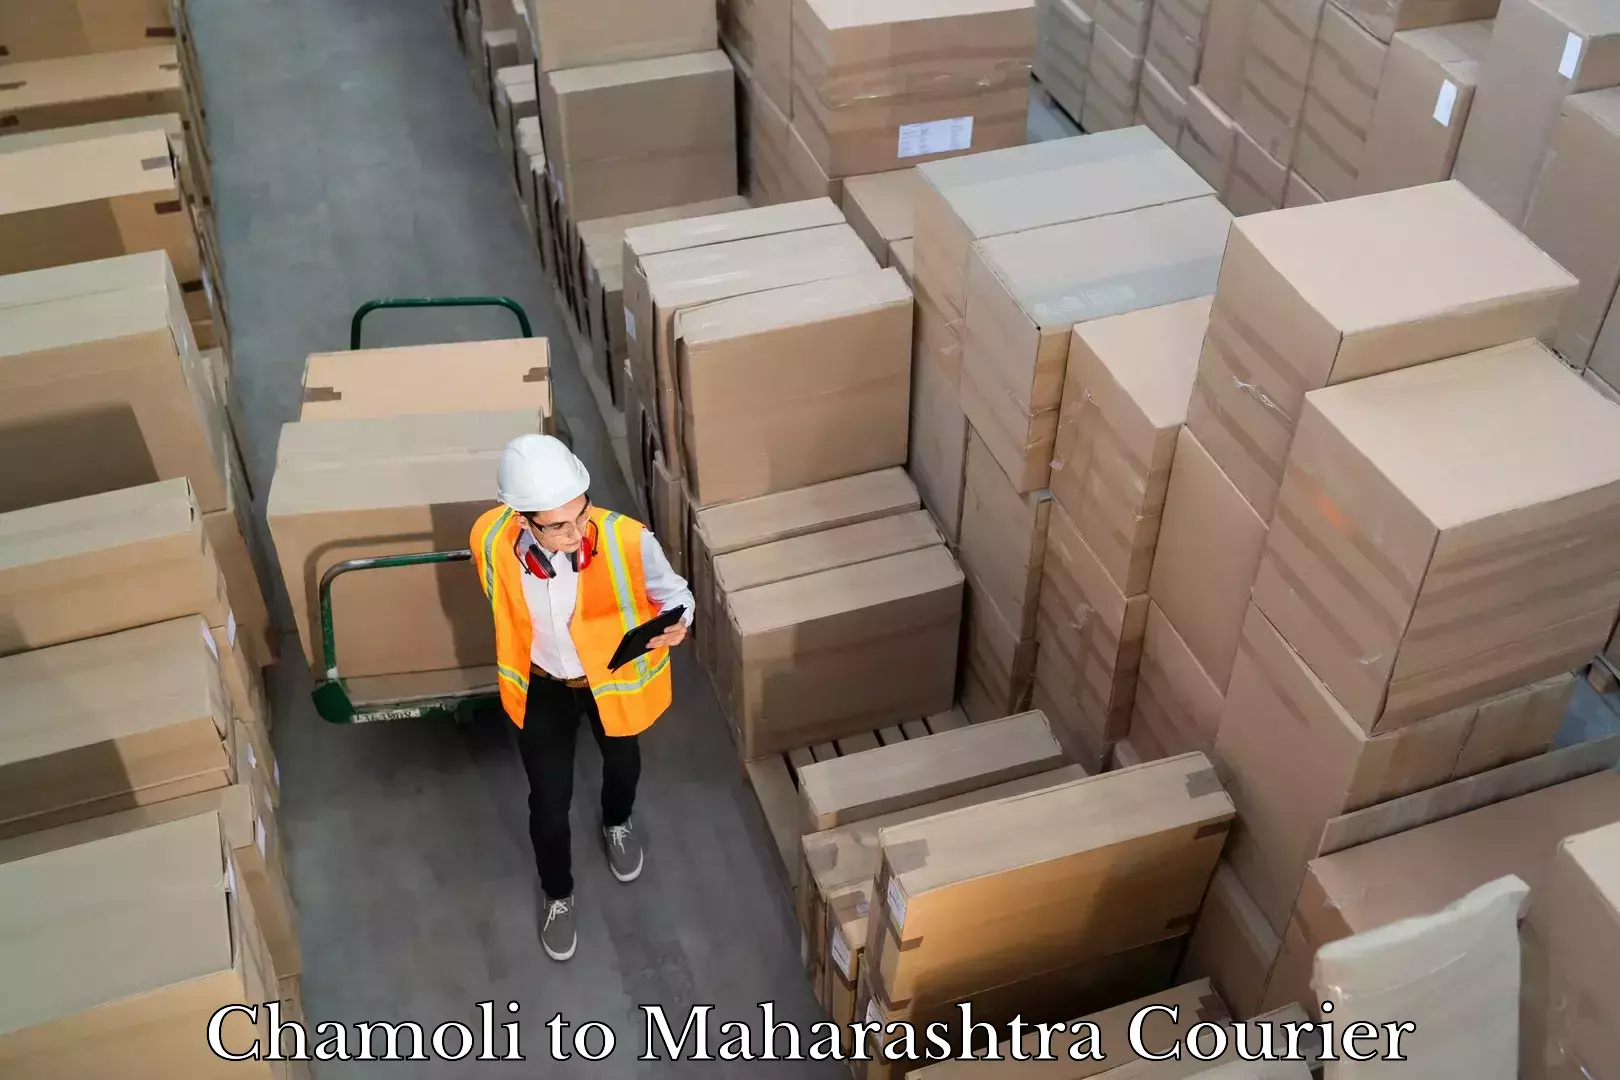 Express mail solutions Chamoli to Maharashtra